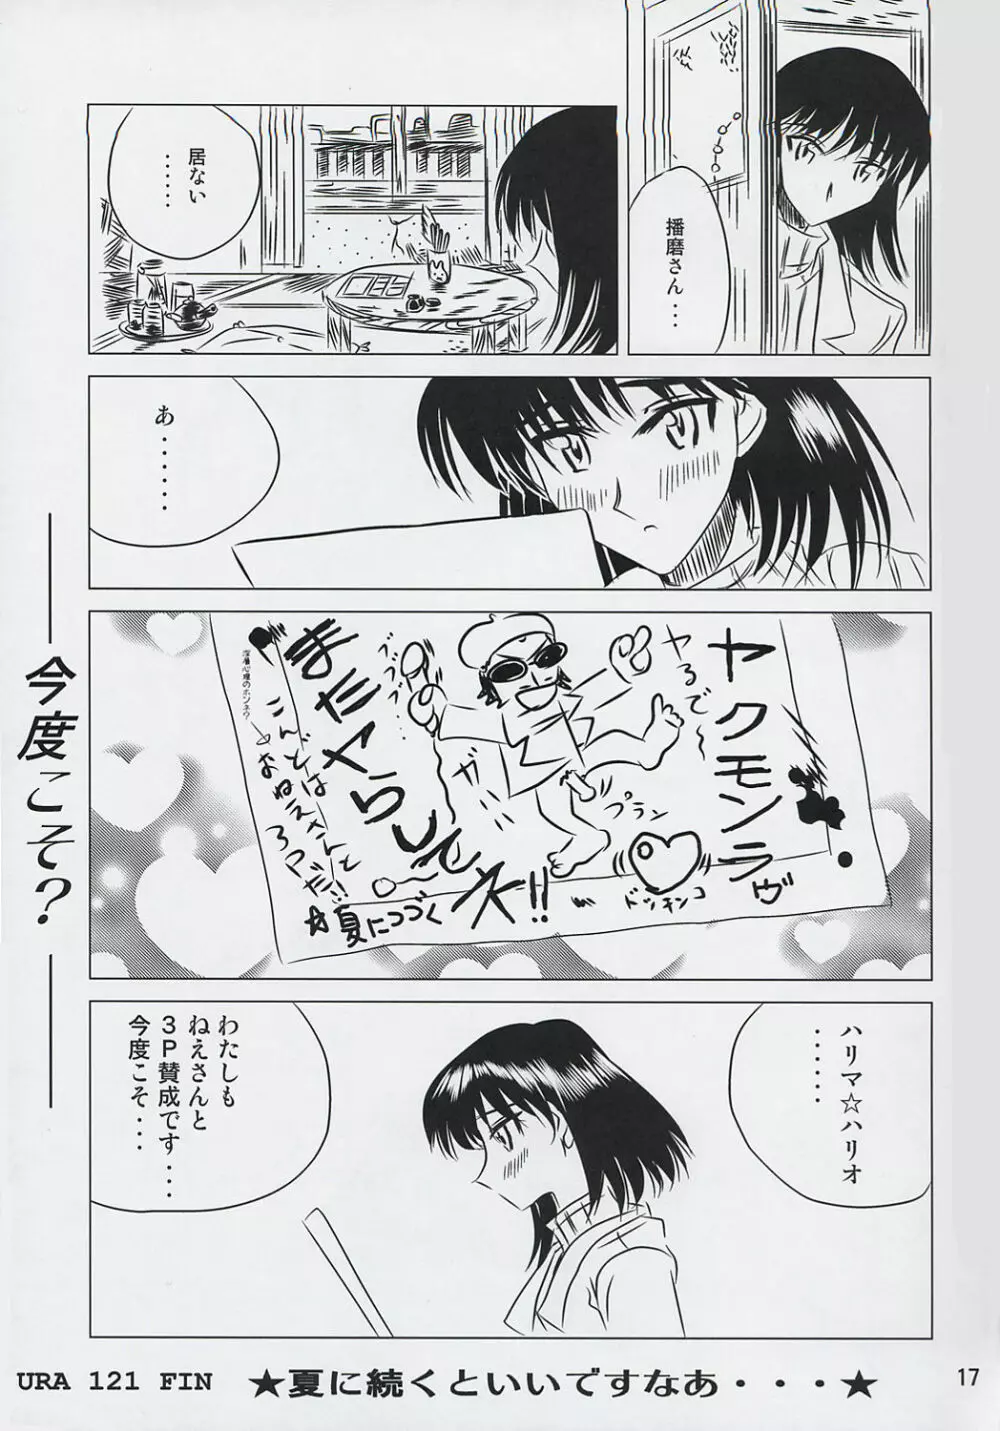 school ちゃんぷるー 6 16ページ